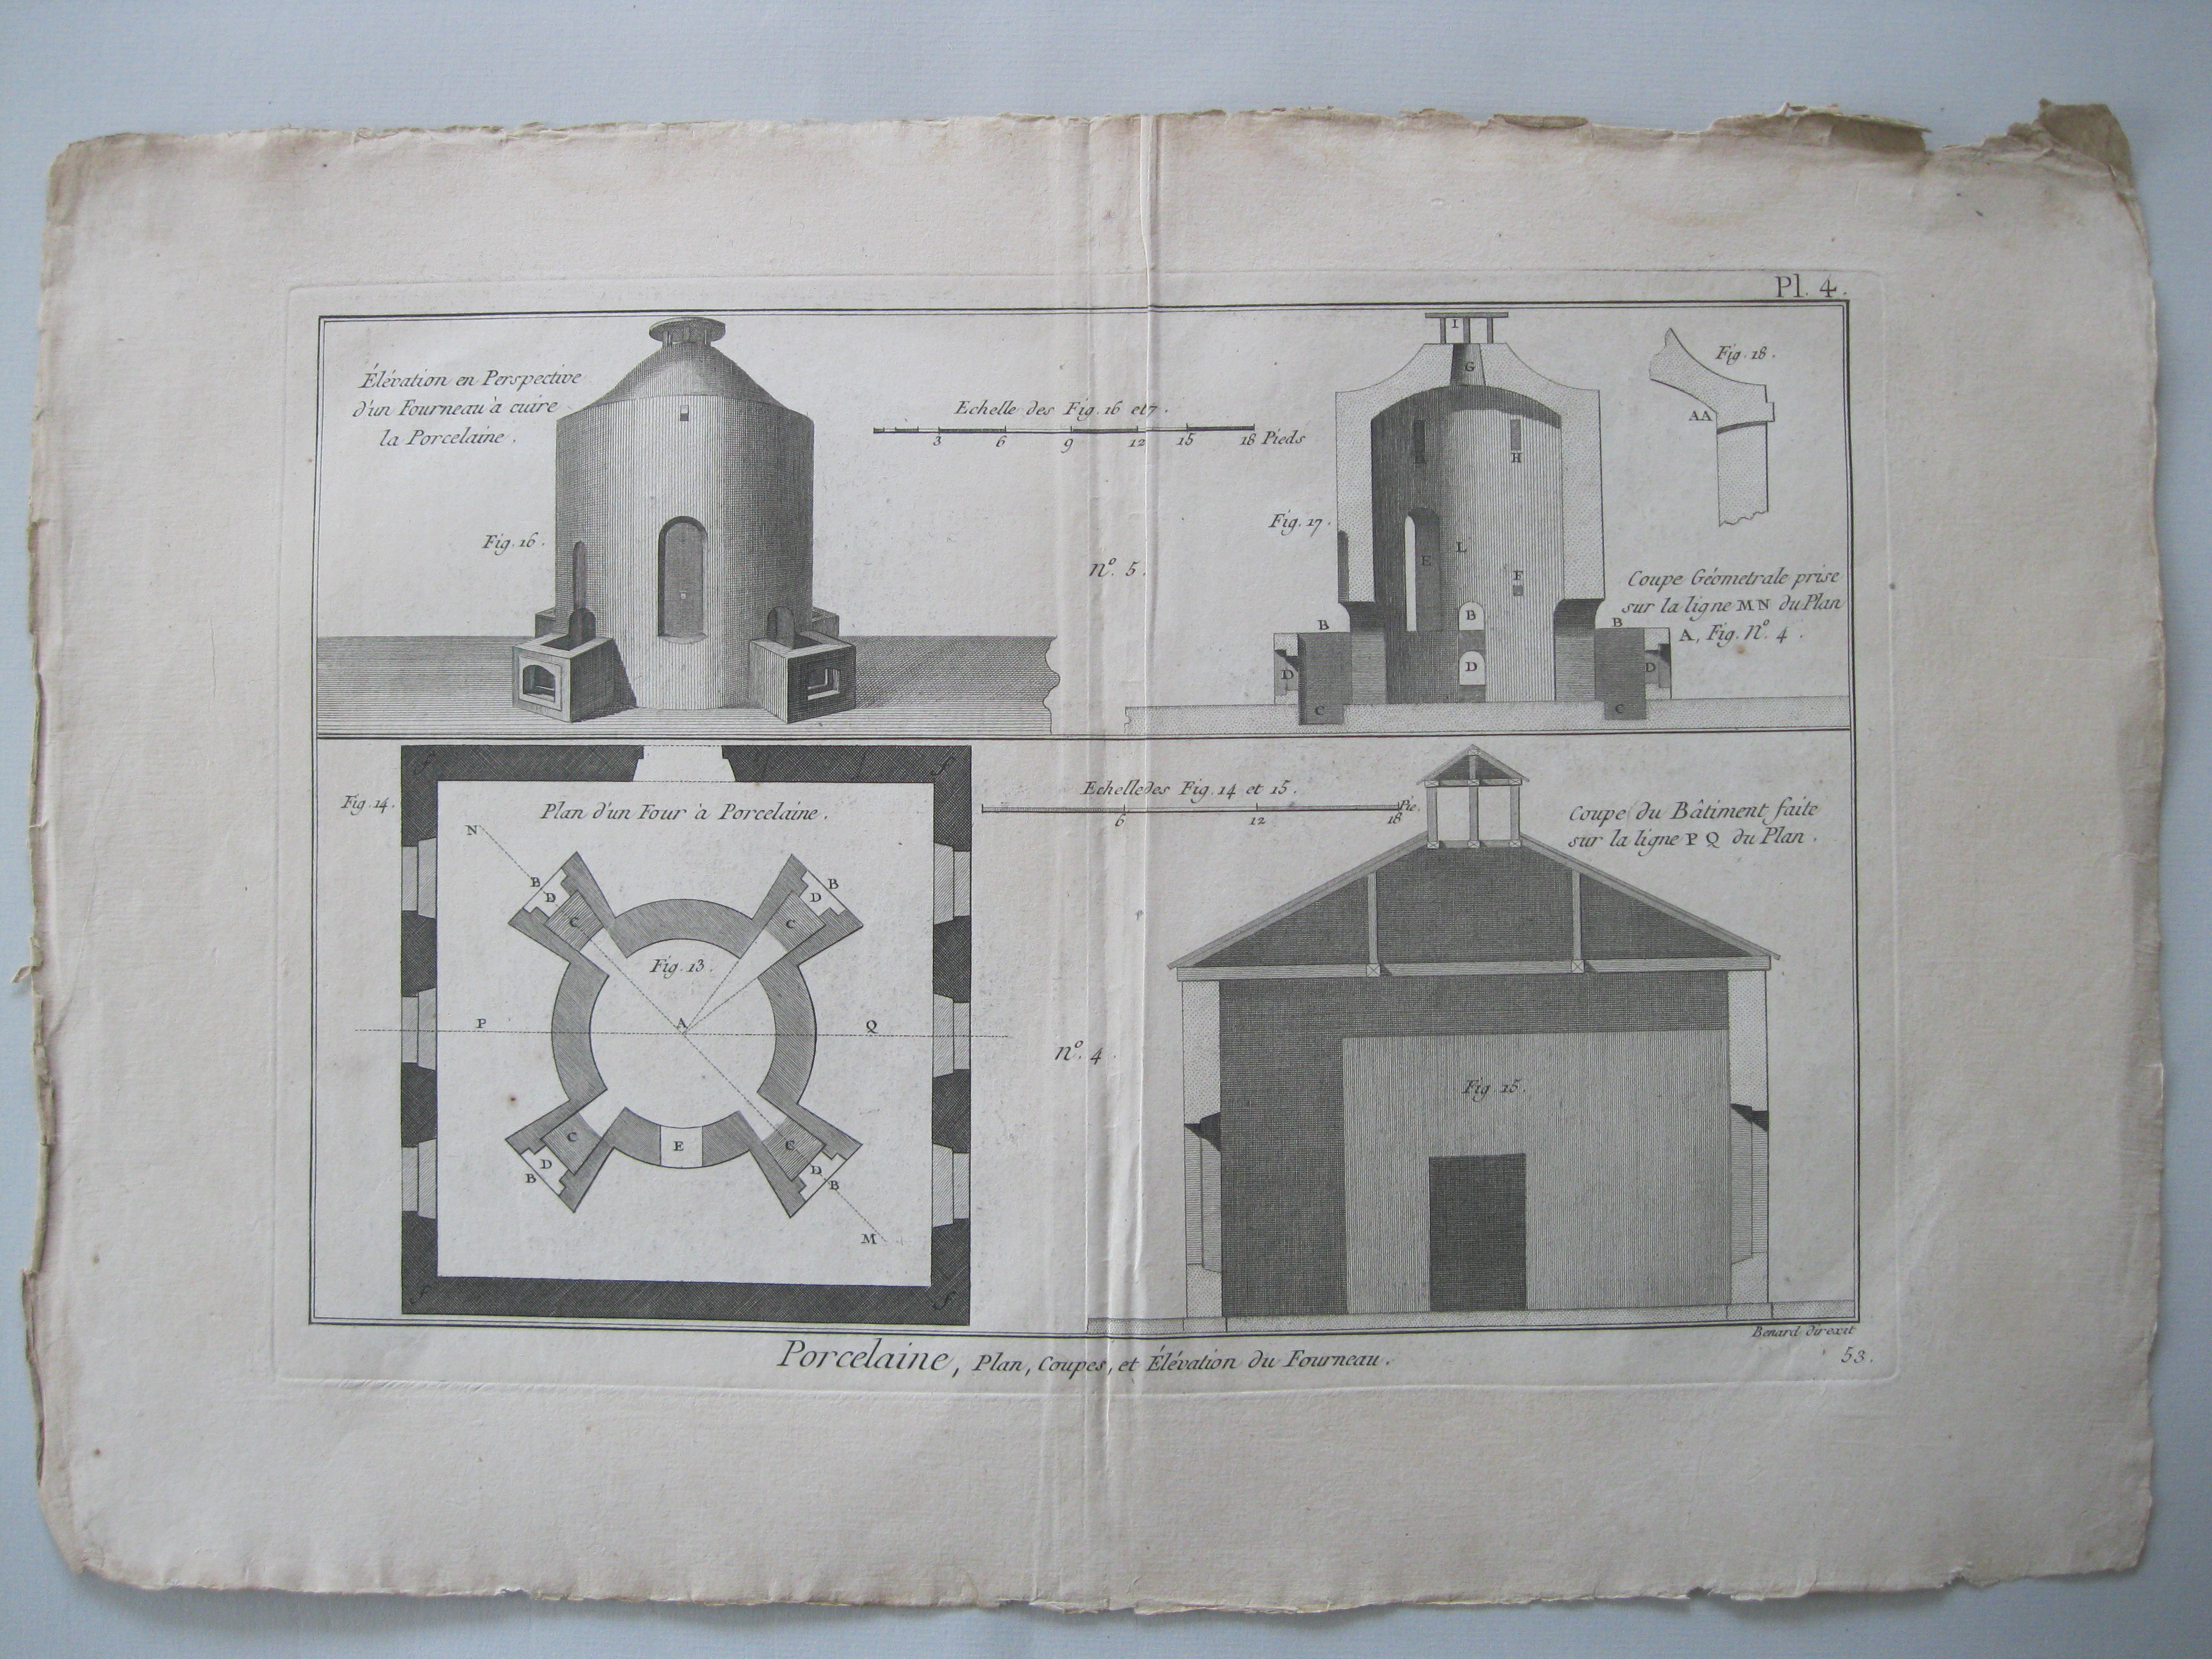 Oficios. Porcelaine, Plan coupes et Élévation du Fourneau. Diderot y D'Alembert.1779